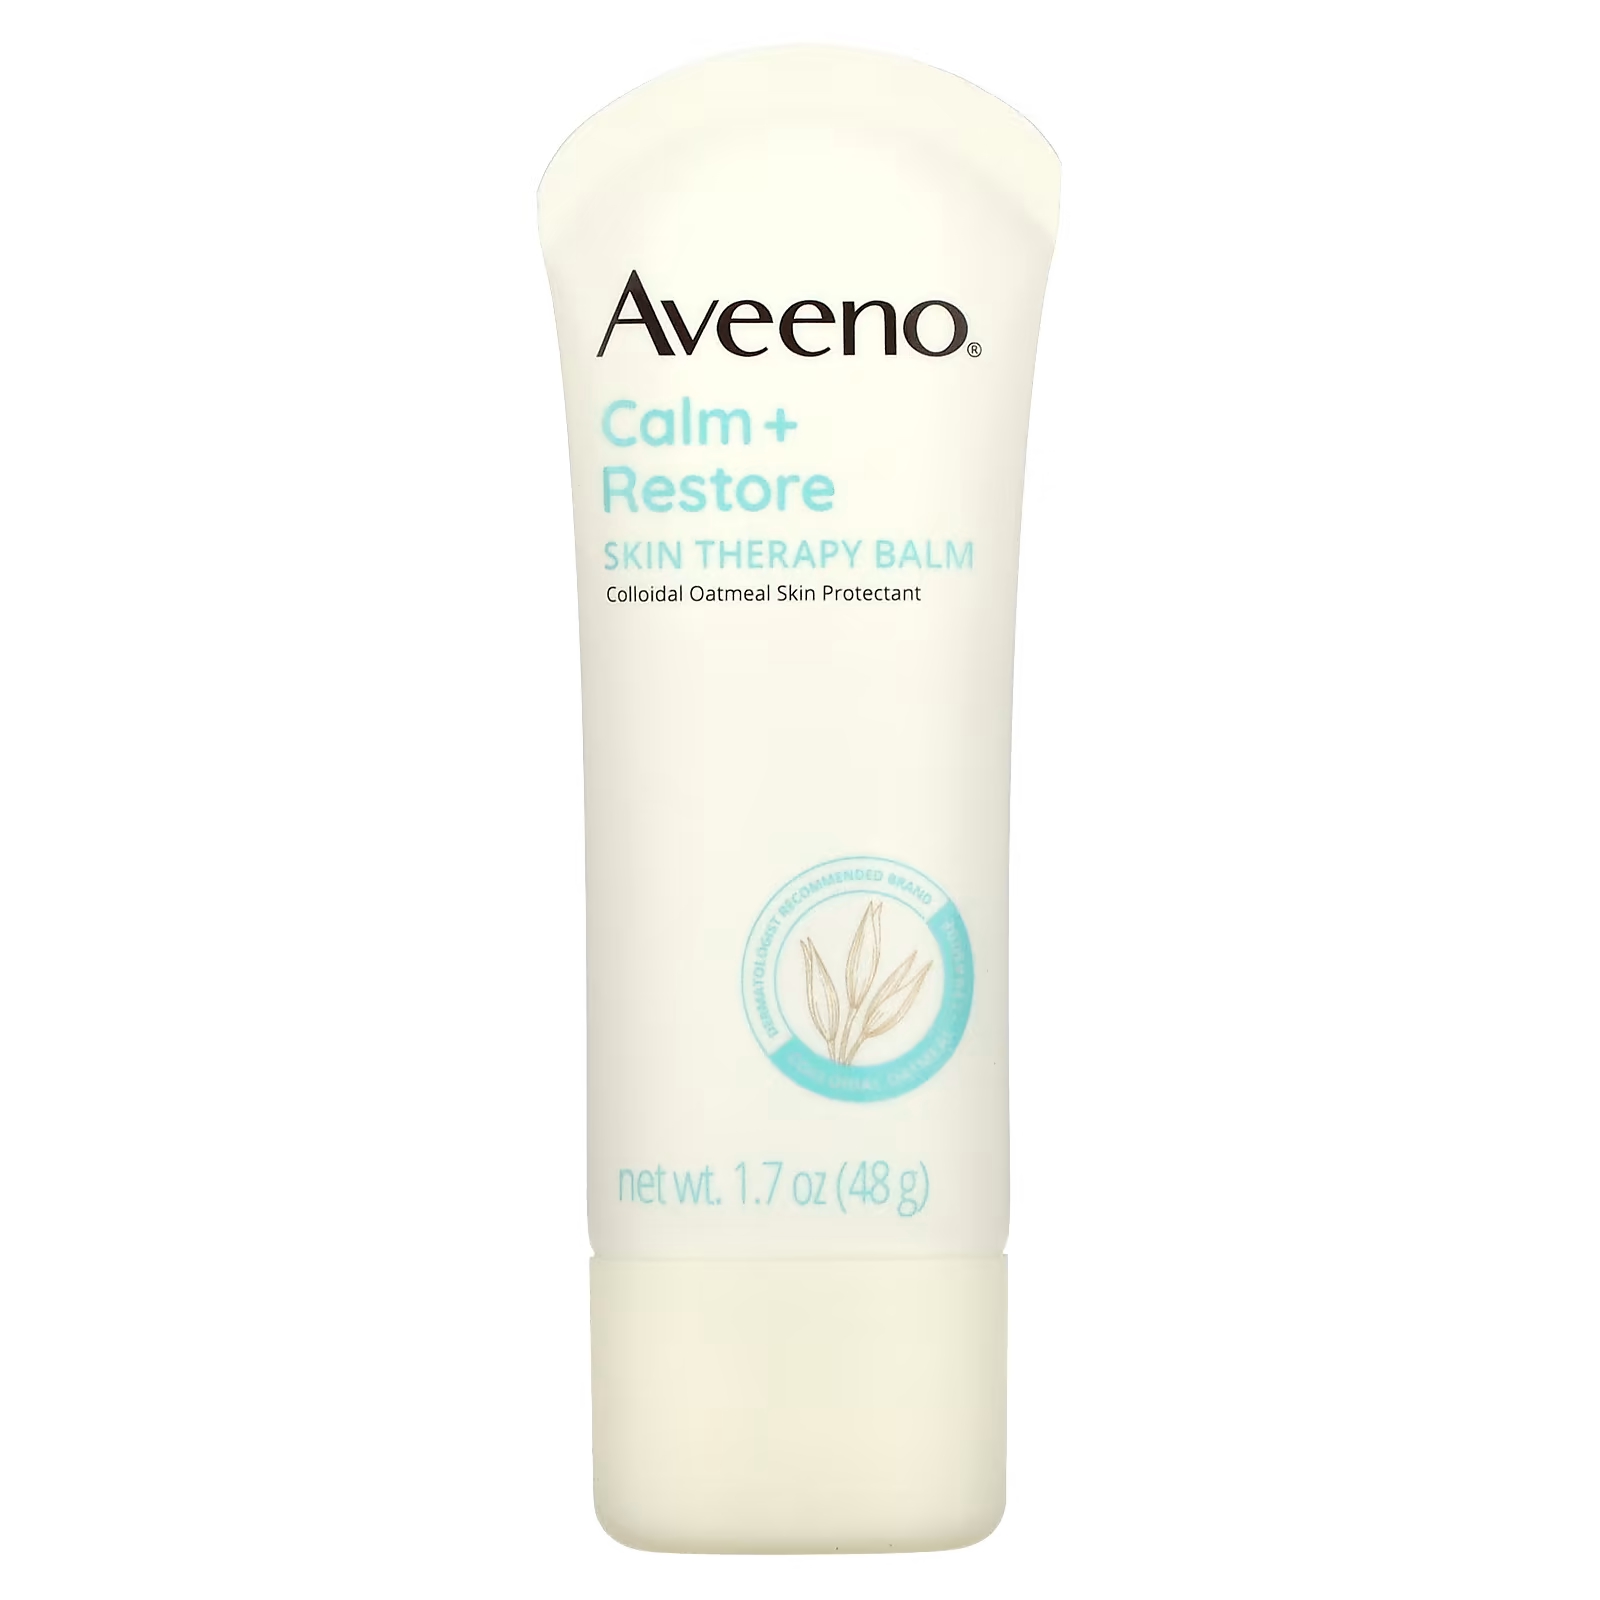 Бальзам Aveeno Calm + Restore для ухода за кожей, 48 г aveeno calm restore бальзам для ухода за кожей без отдушек 48 г 1 7 унции